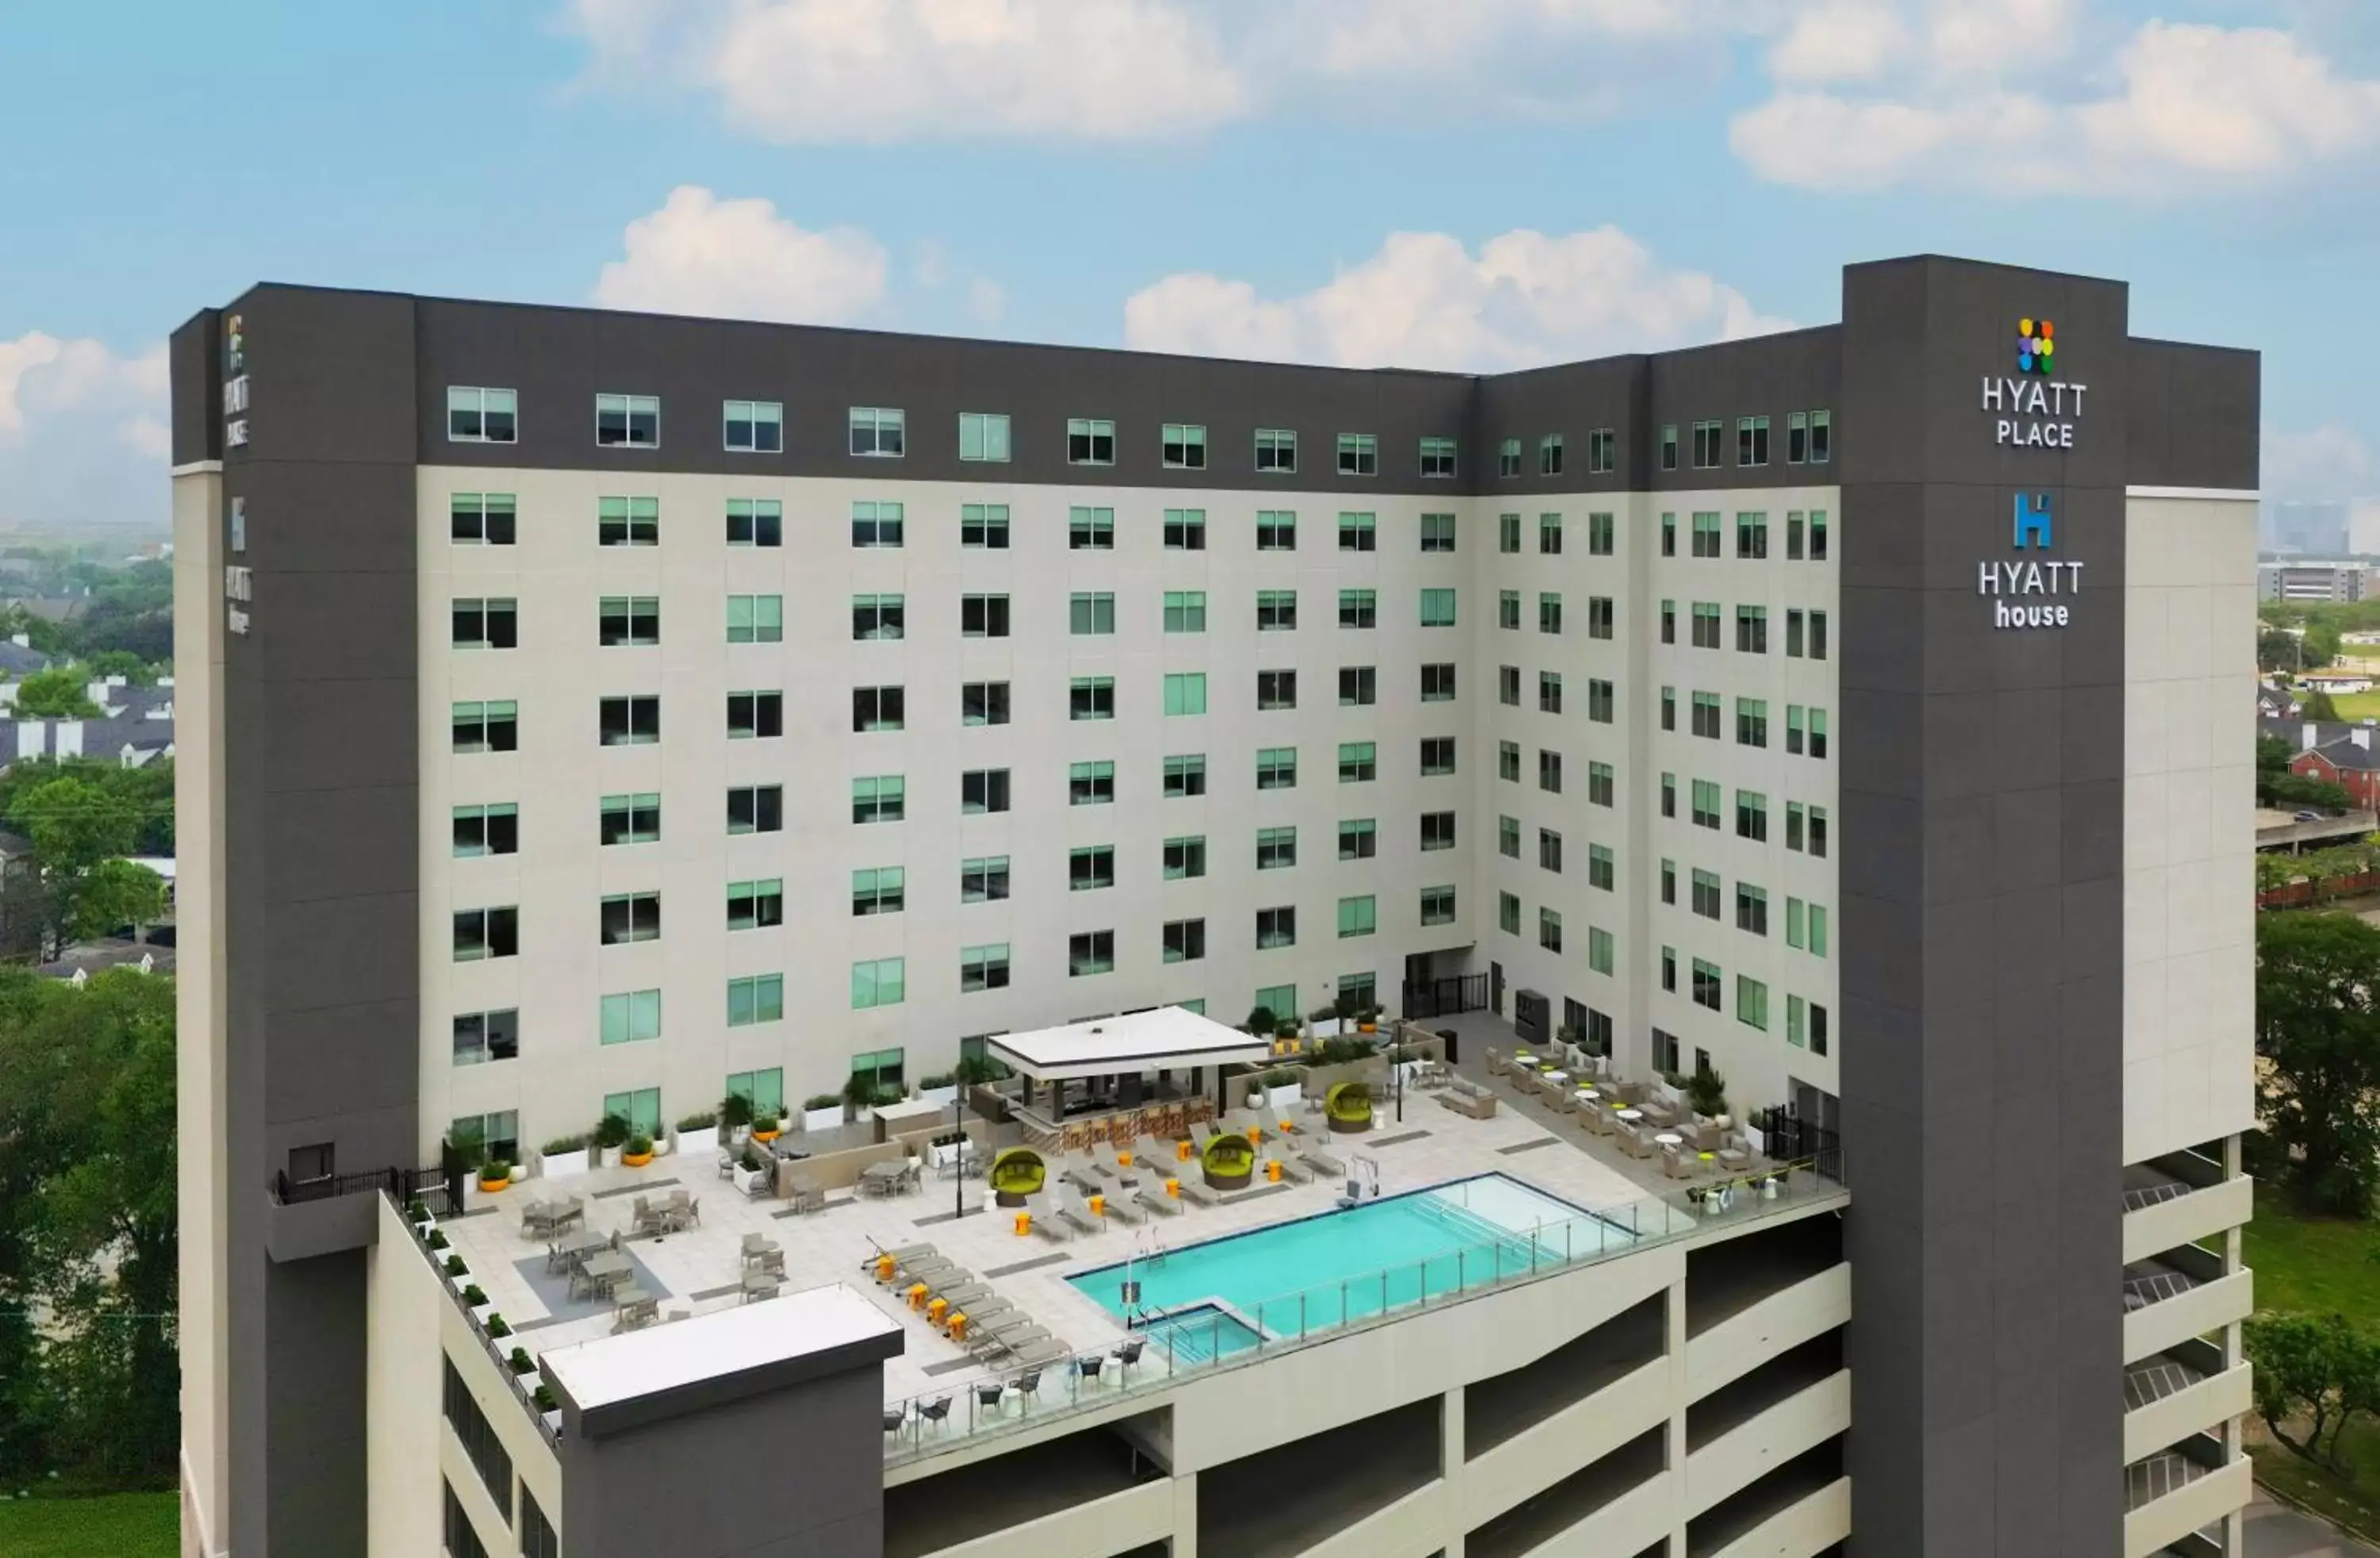 Pool View in Hyatt House Houston Medical Center